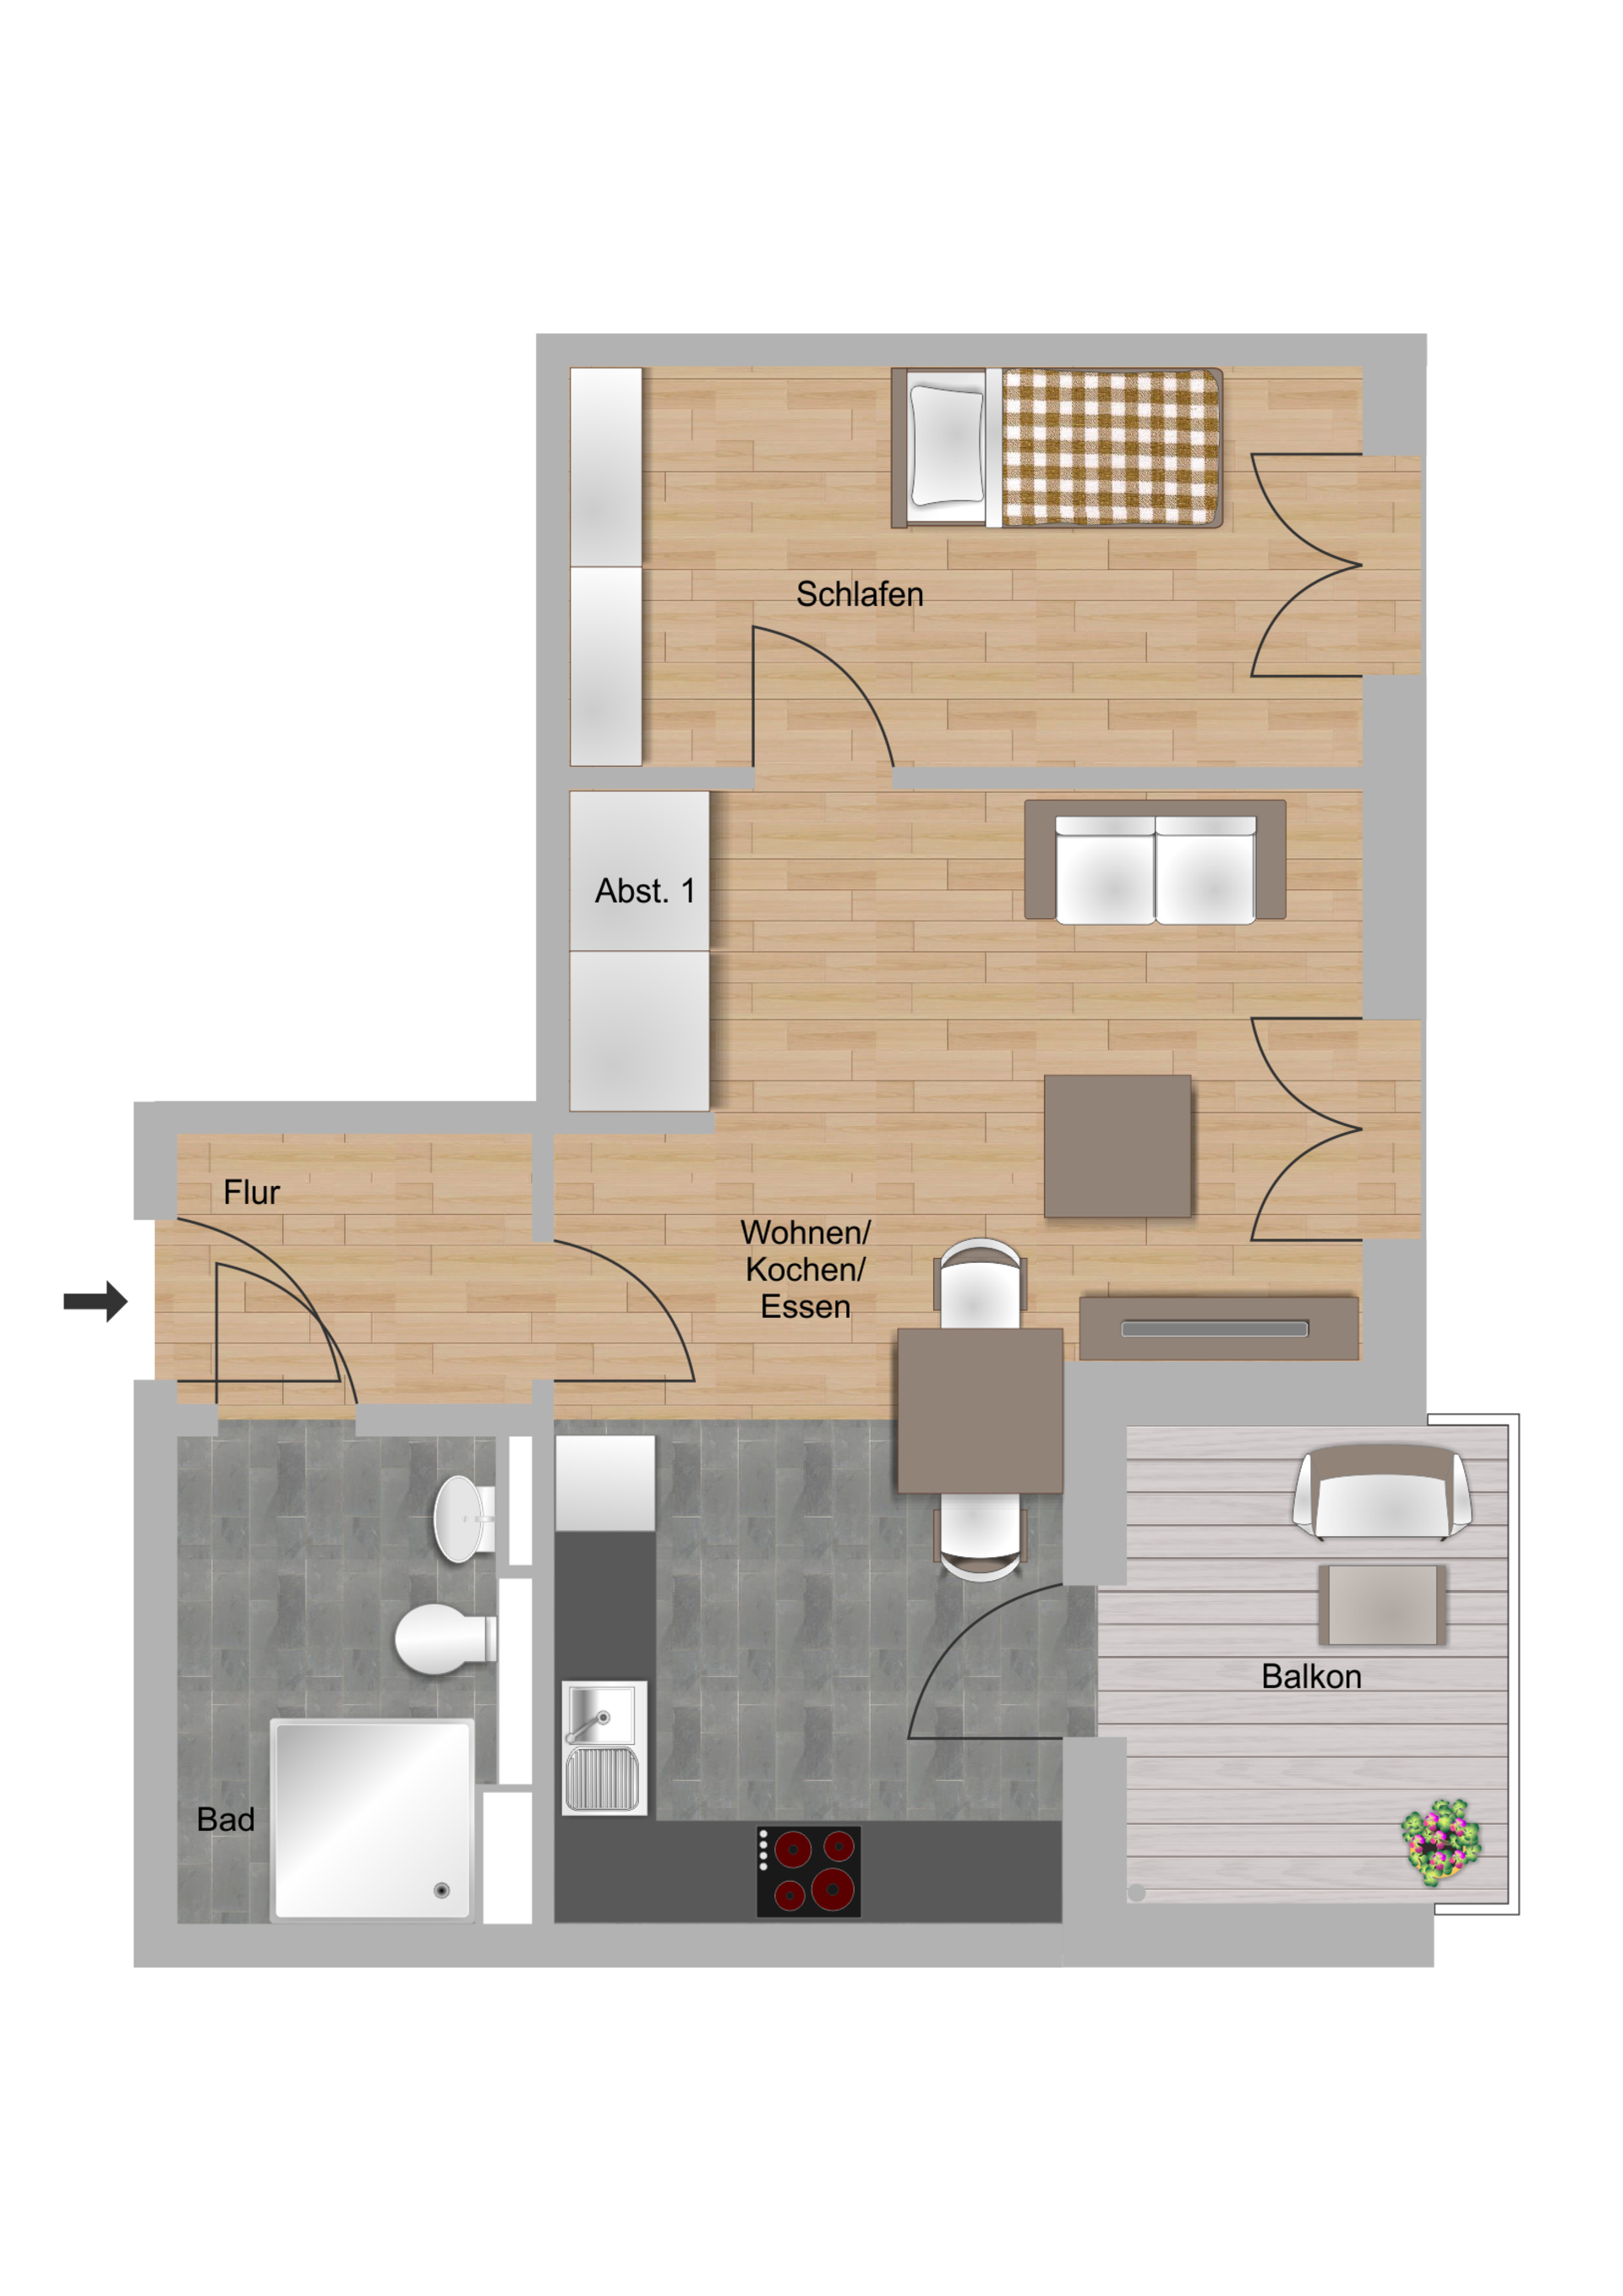 1,5-Zimmer-Wohnung (Ergeschoss/barrierefrei) ca. 44 m²